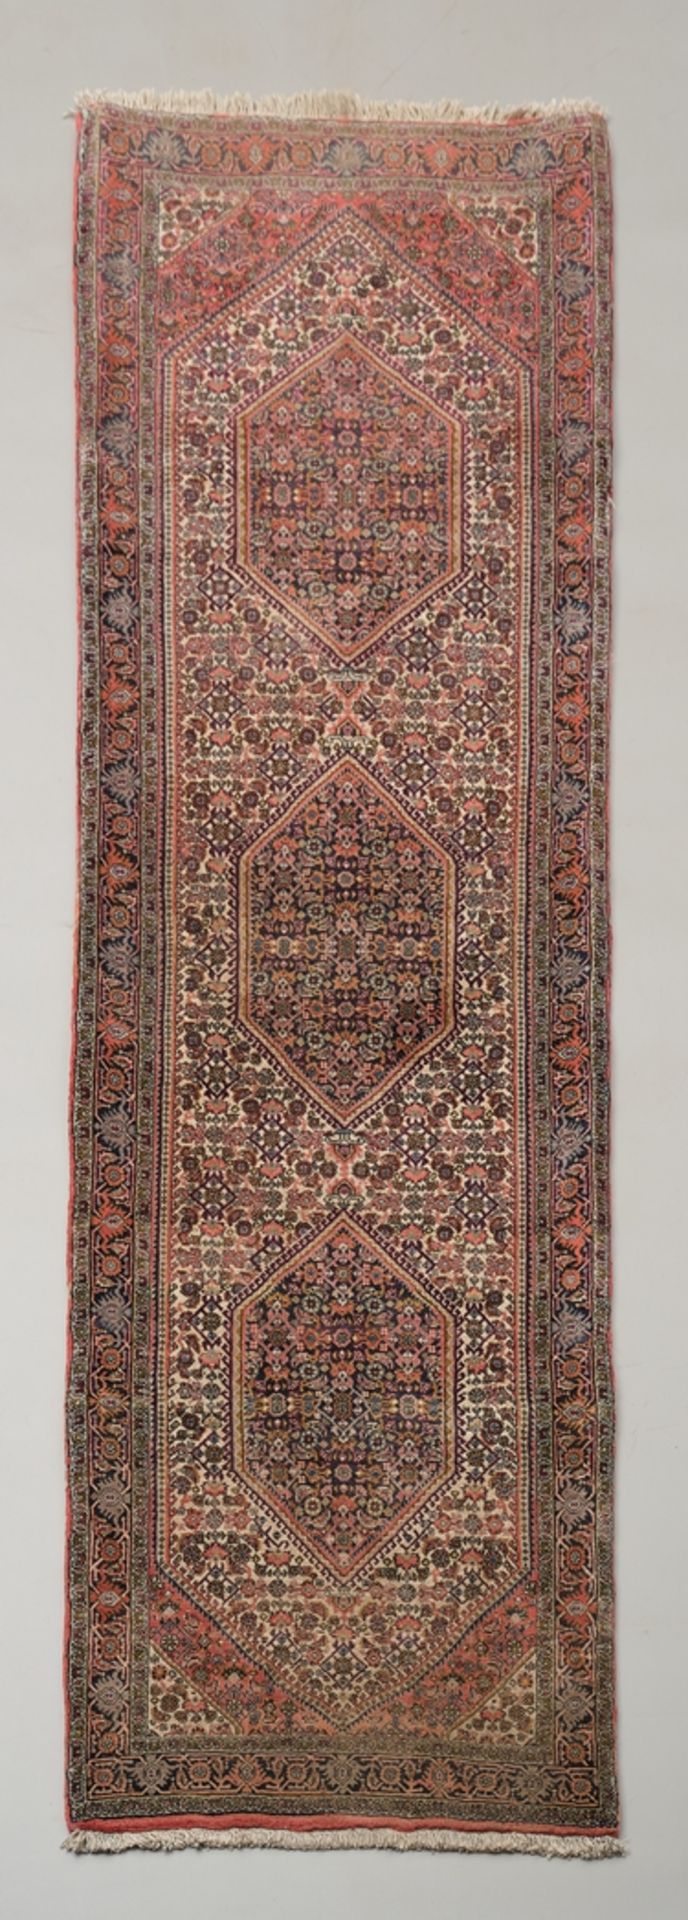 Herati bidjar, Iran, very fine weave, approx. 2.48 x 0.74 m